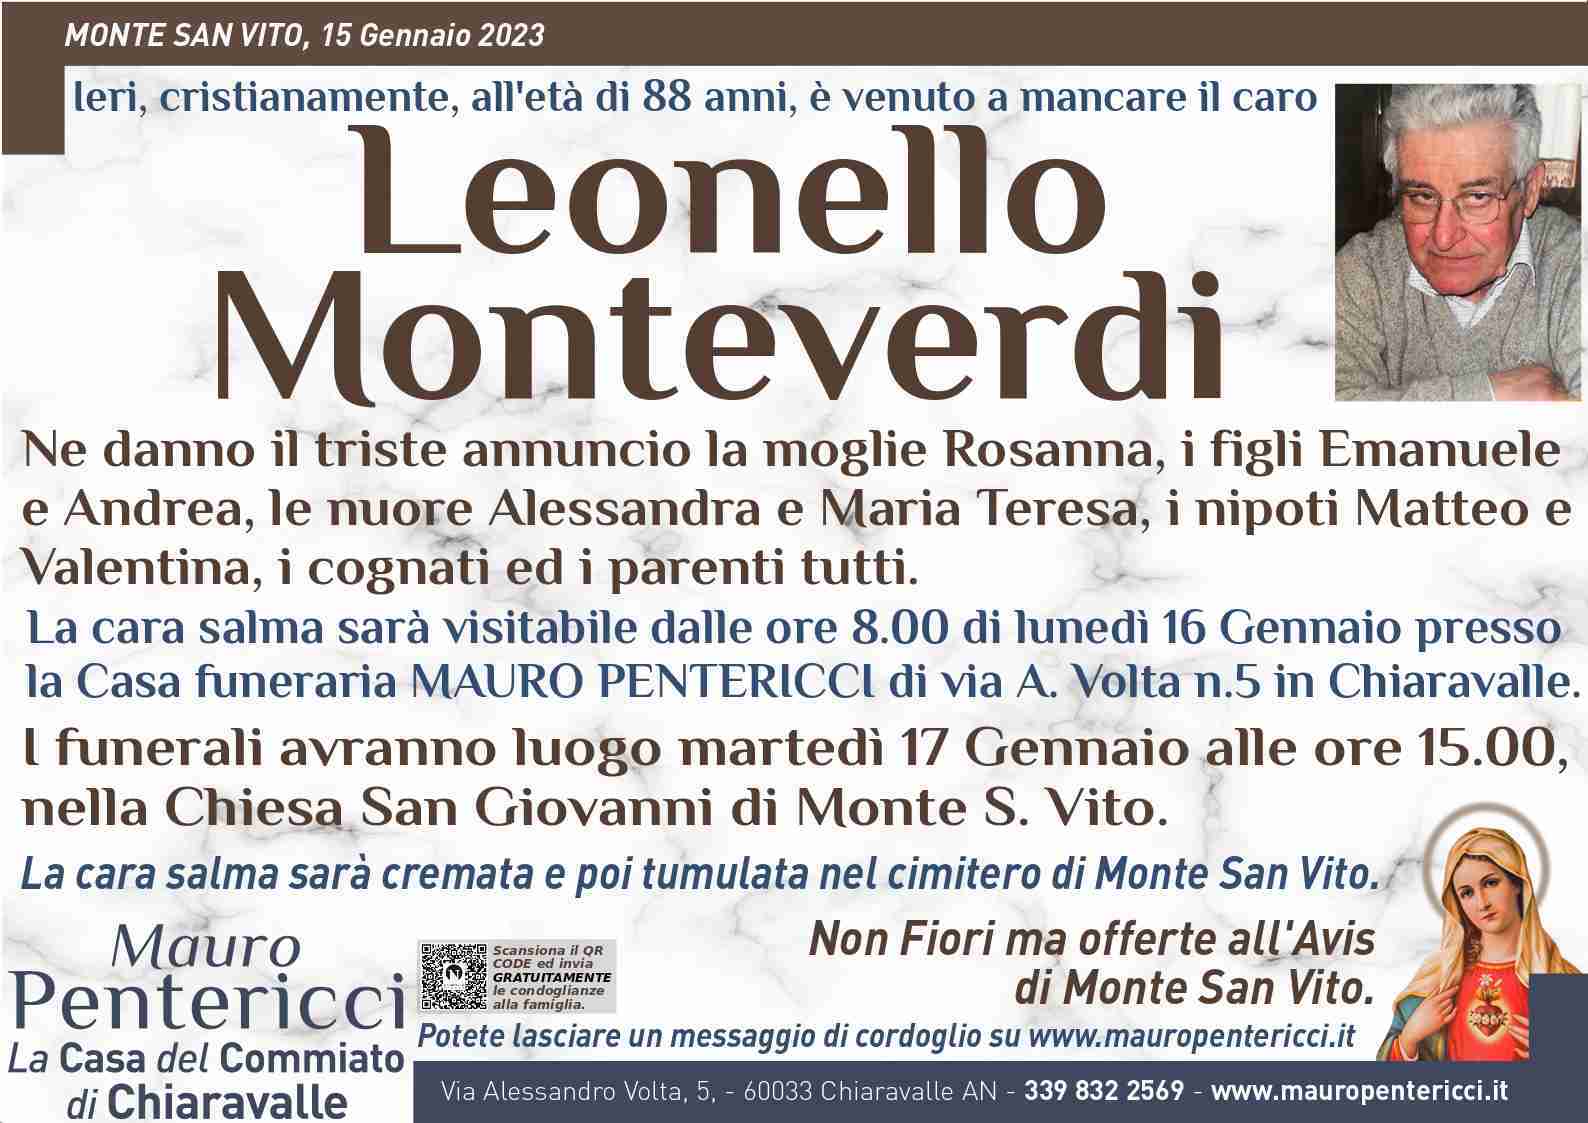 Leonello Monteverdi